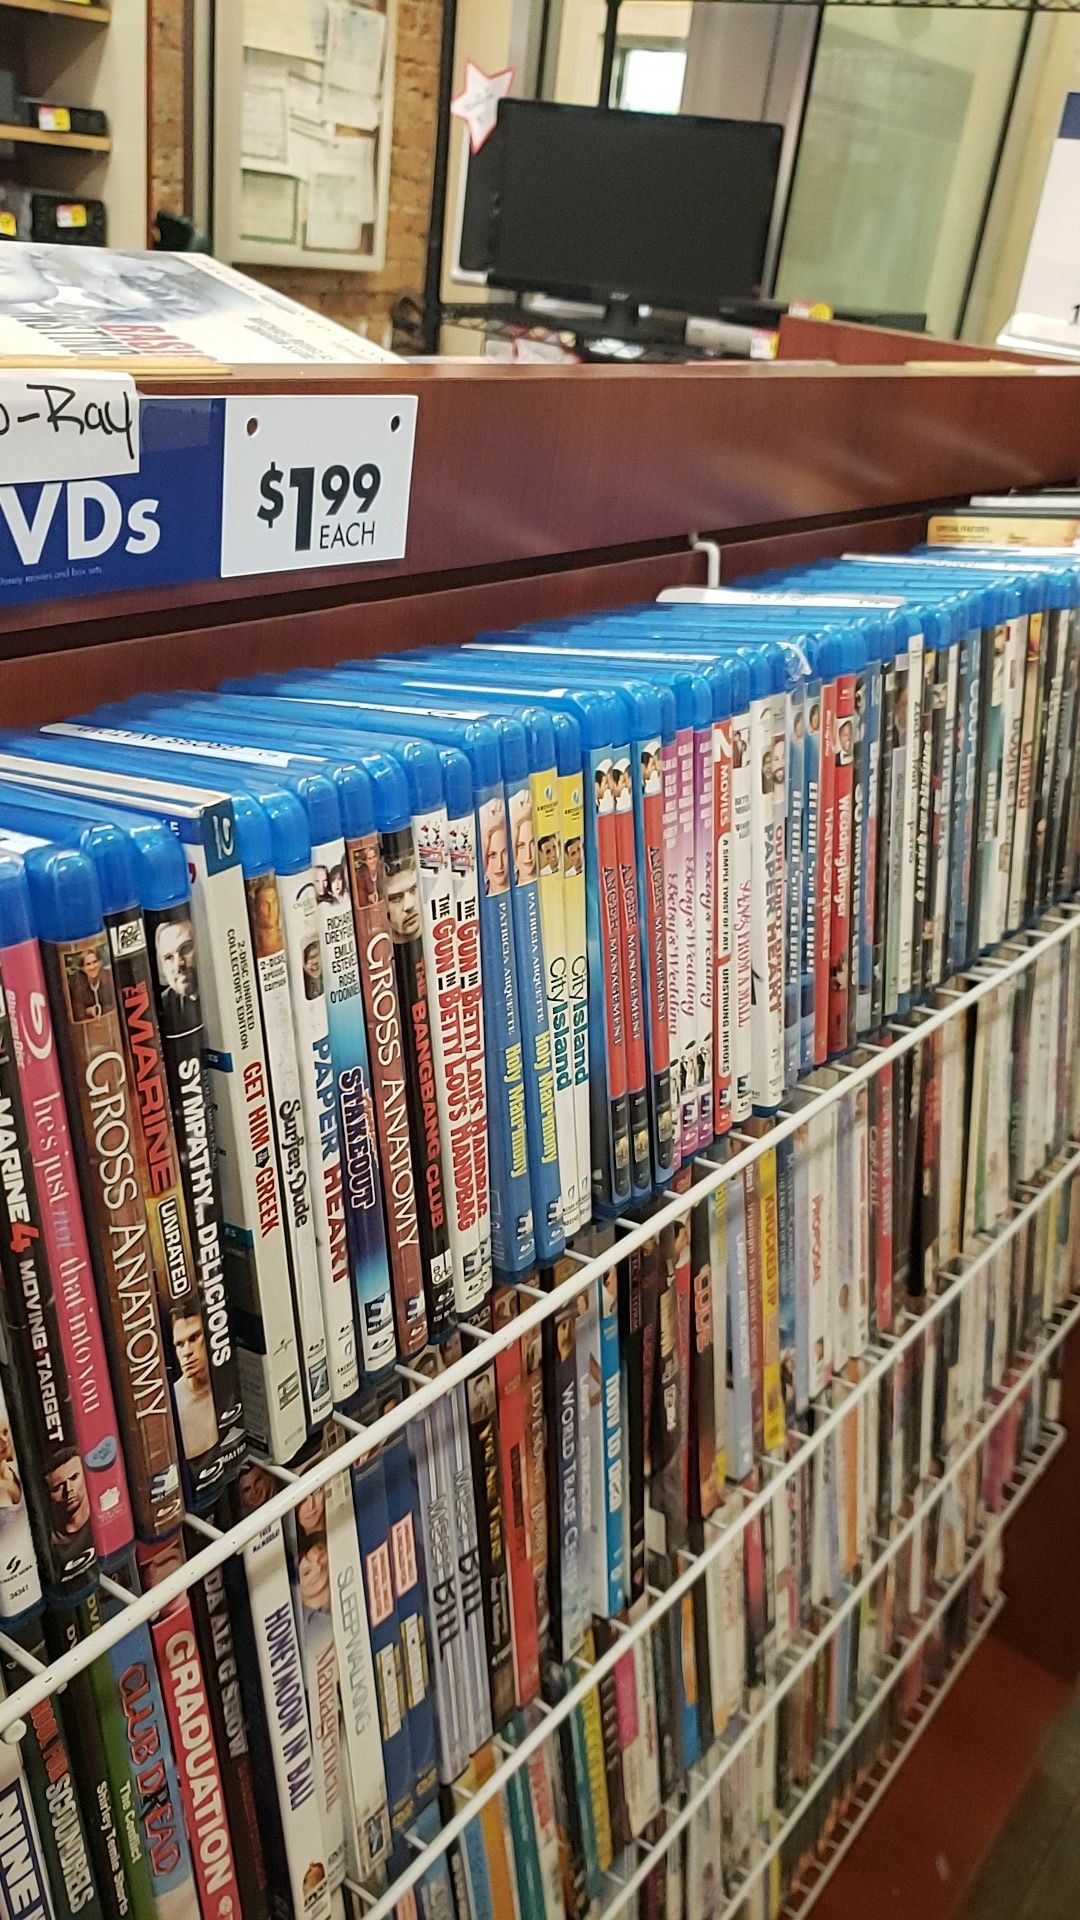 Blu Ray DVDs